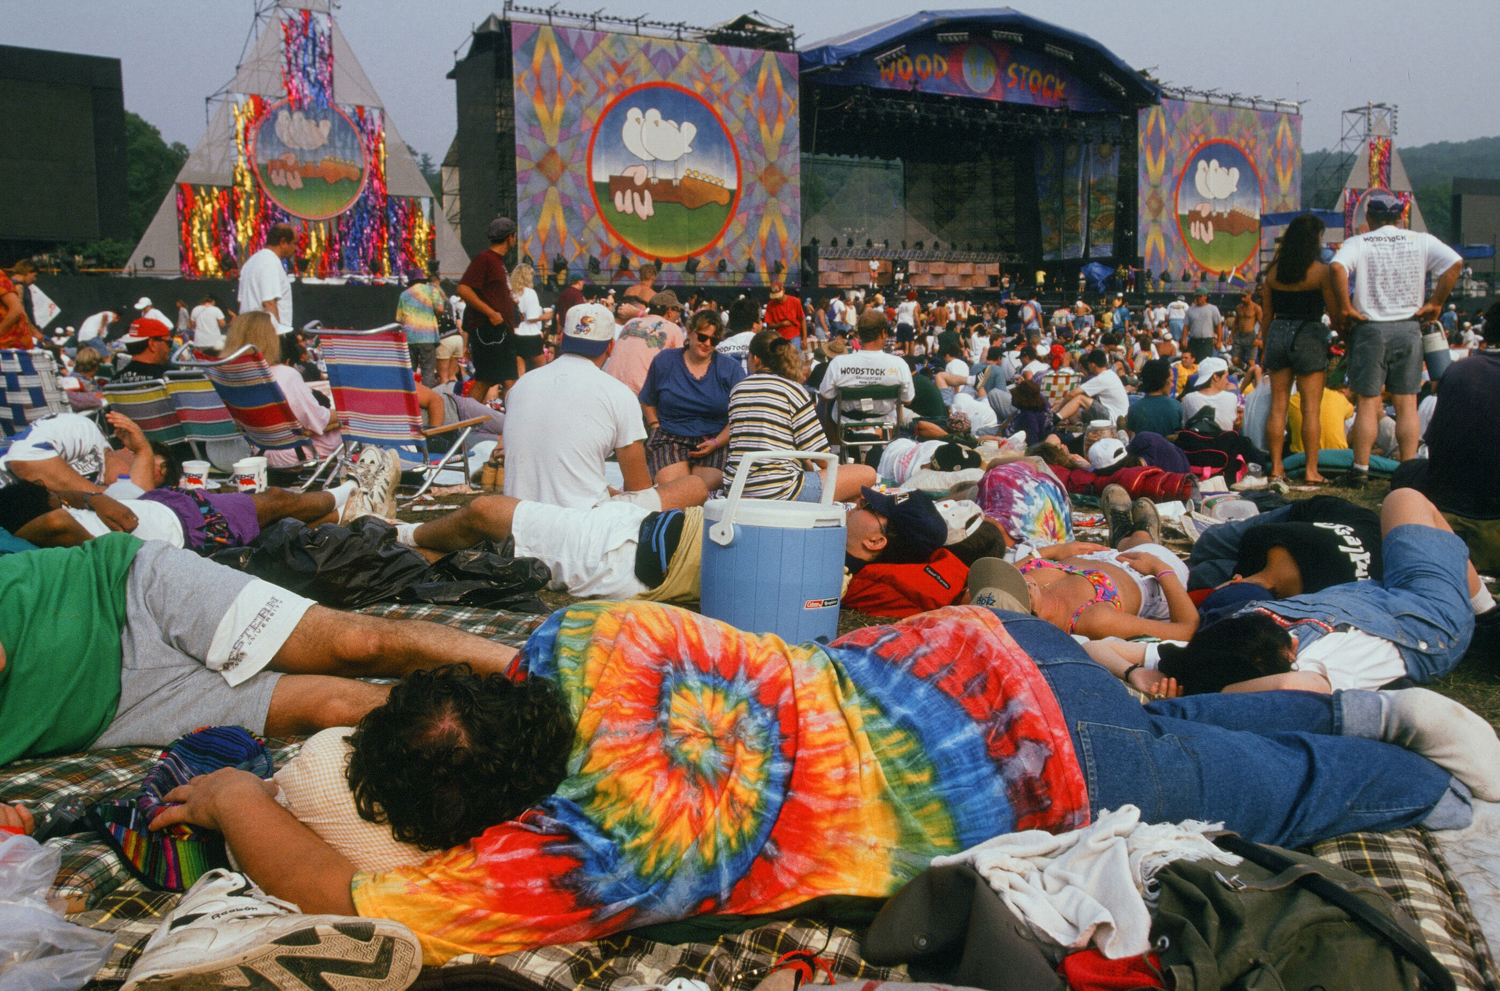 027_Woodstock-0461.jpg